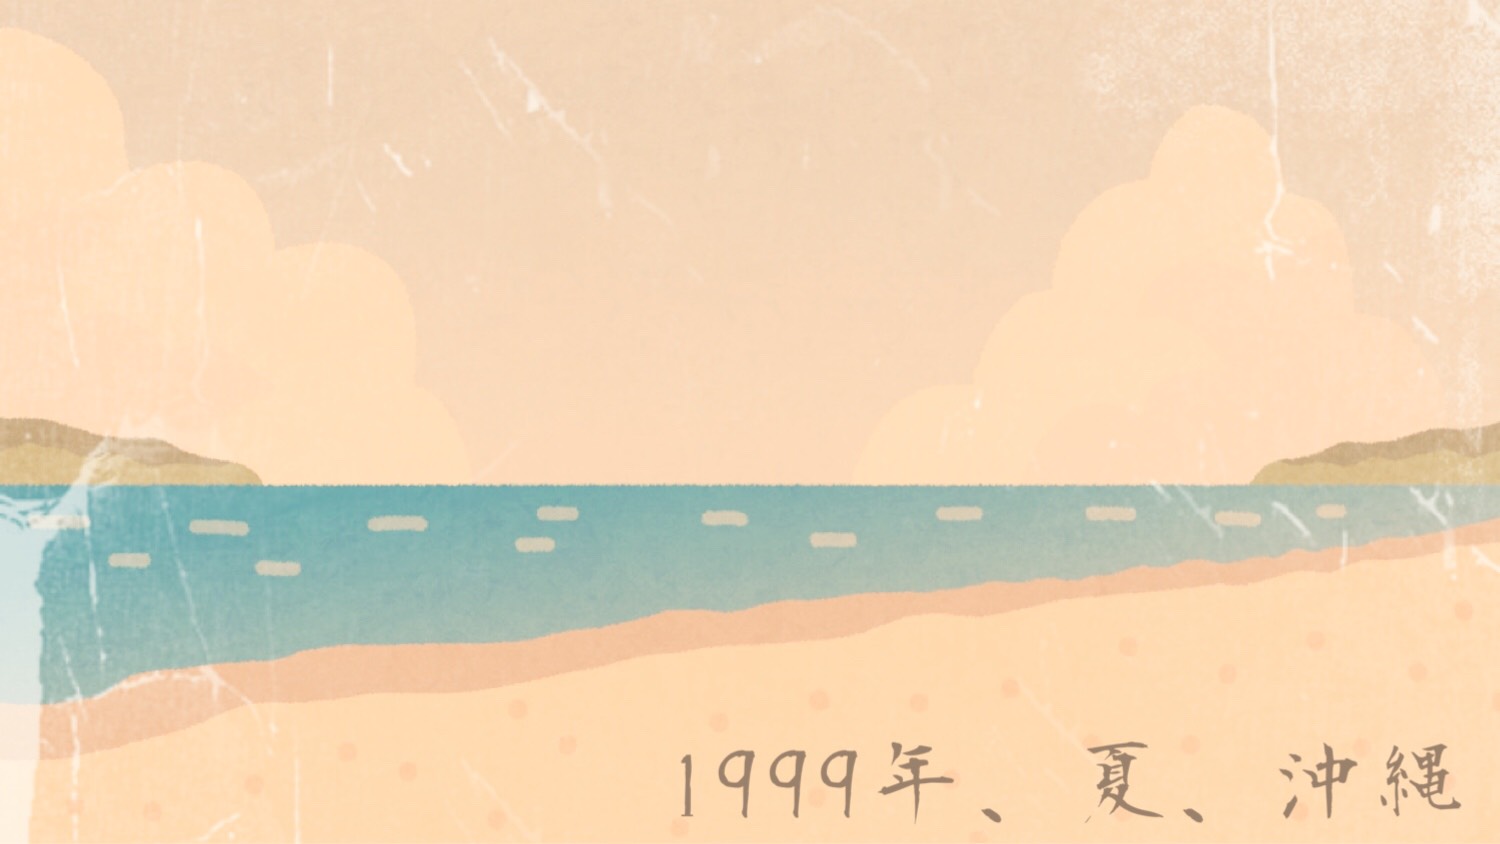 「1999年、夏、沖縄」のイメージ